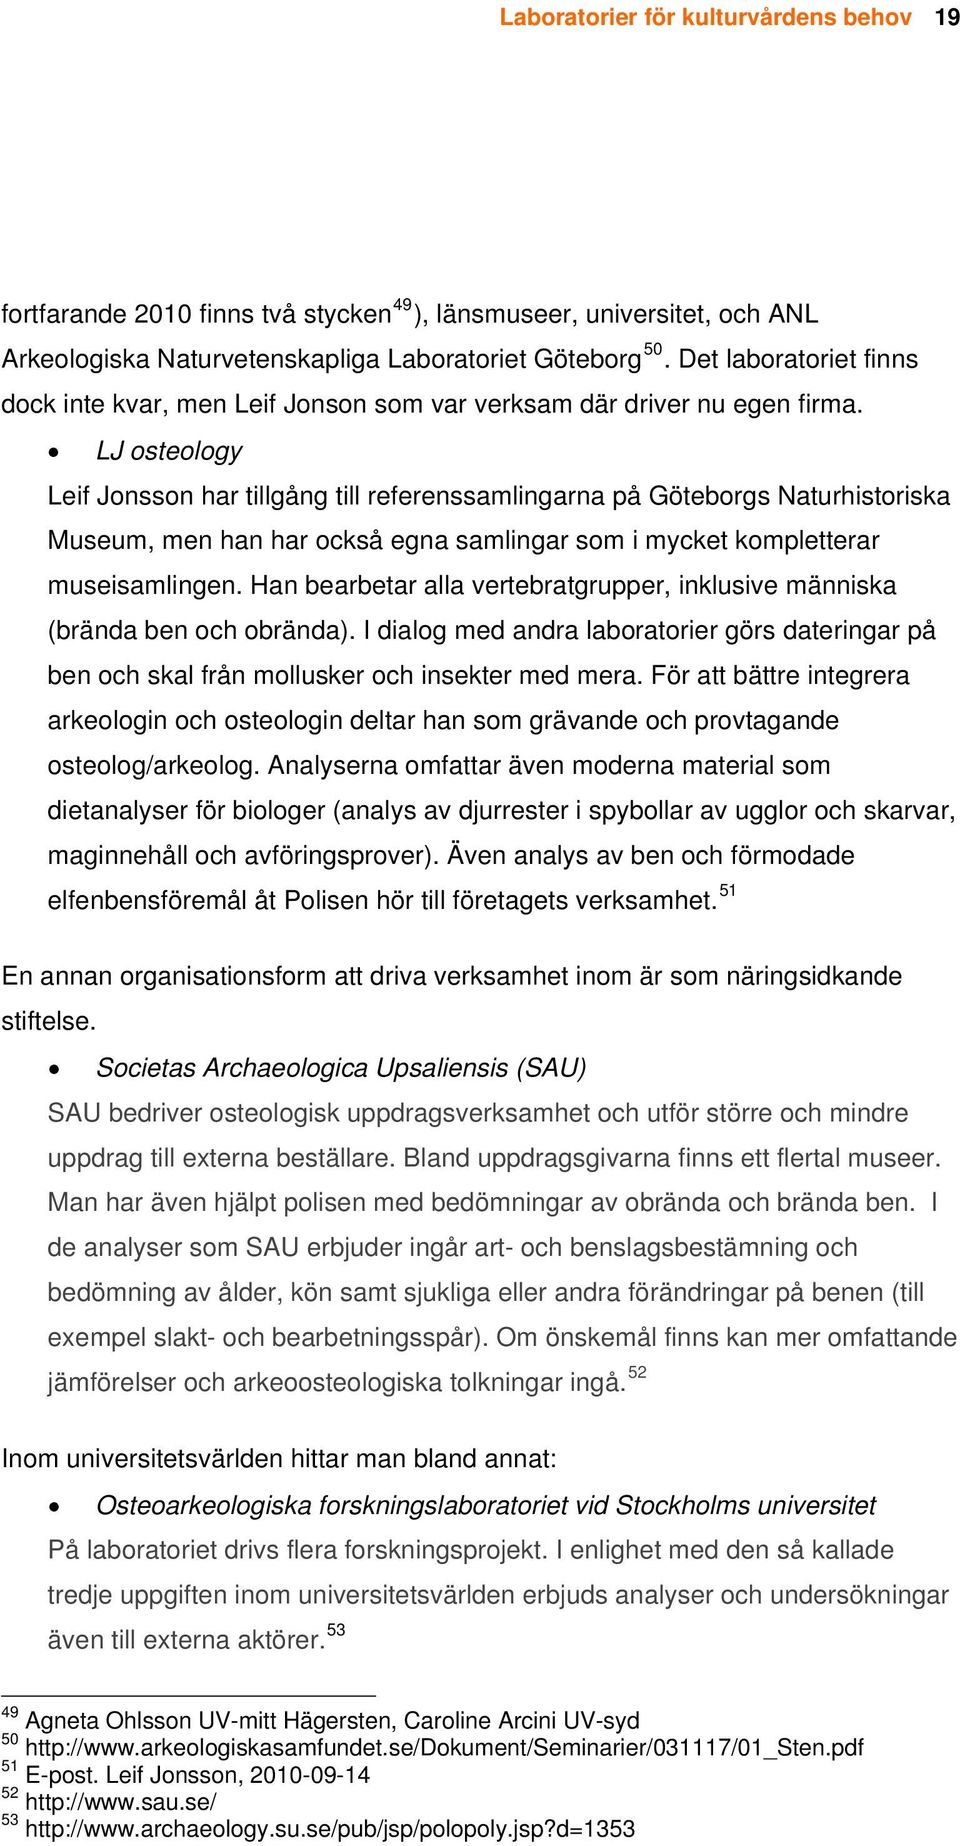 LJ osteology Leif Jonsson har tillgång till referenssamlingarna på Göteborgs Naturhistoriska Museum, men han har också egna samlingar som i mycket kompletterar museisamlingen.